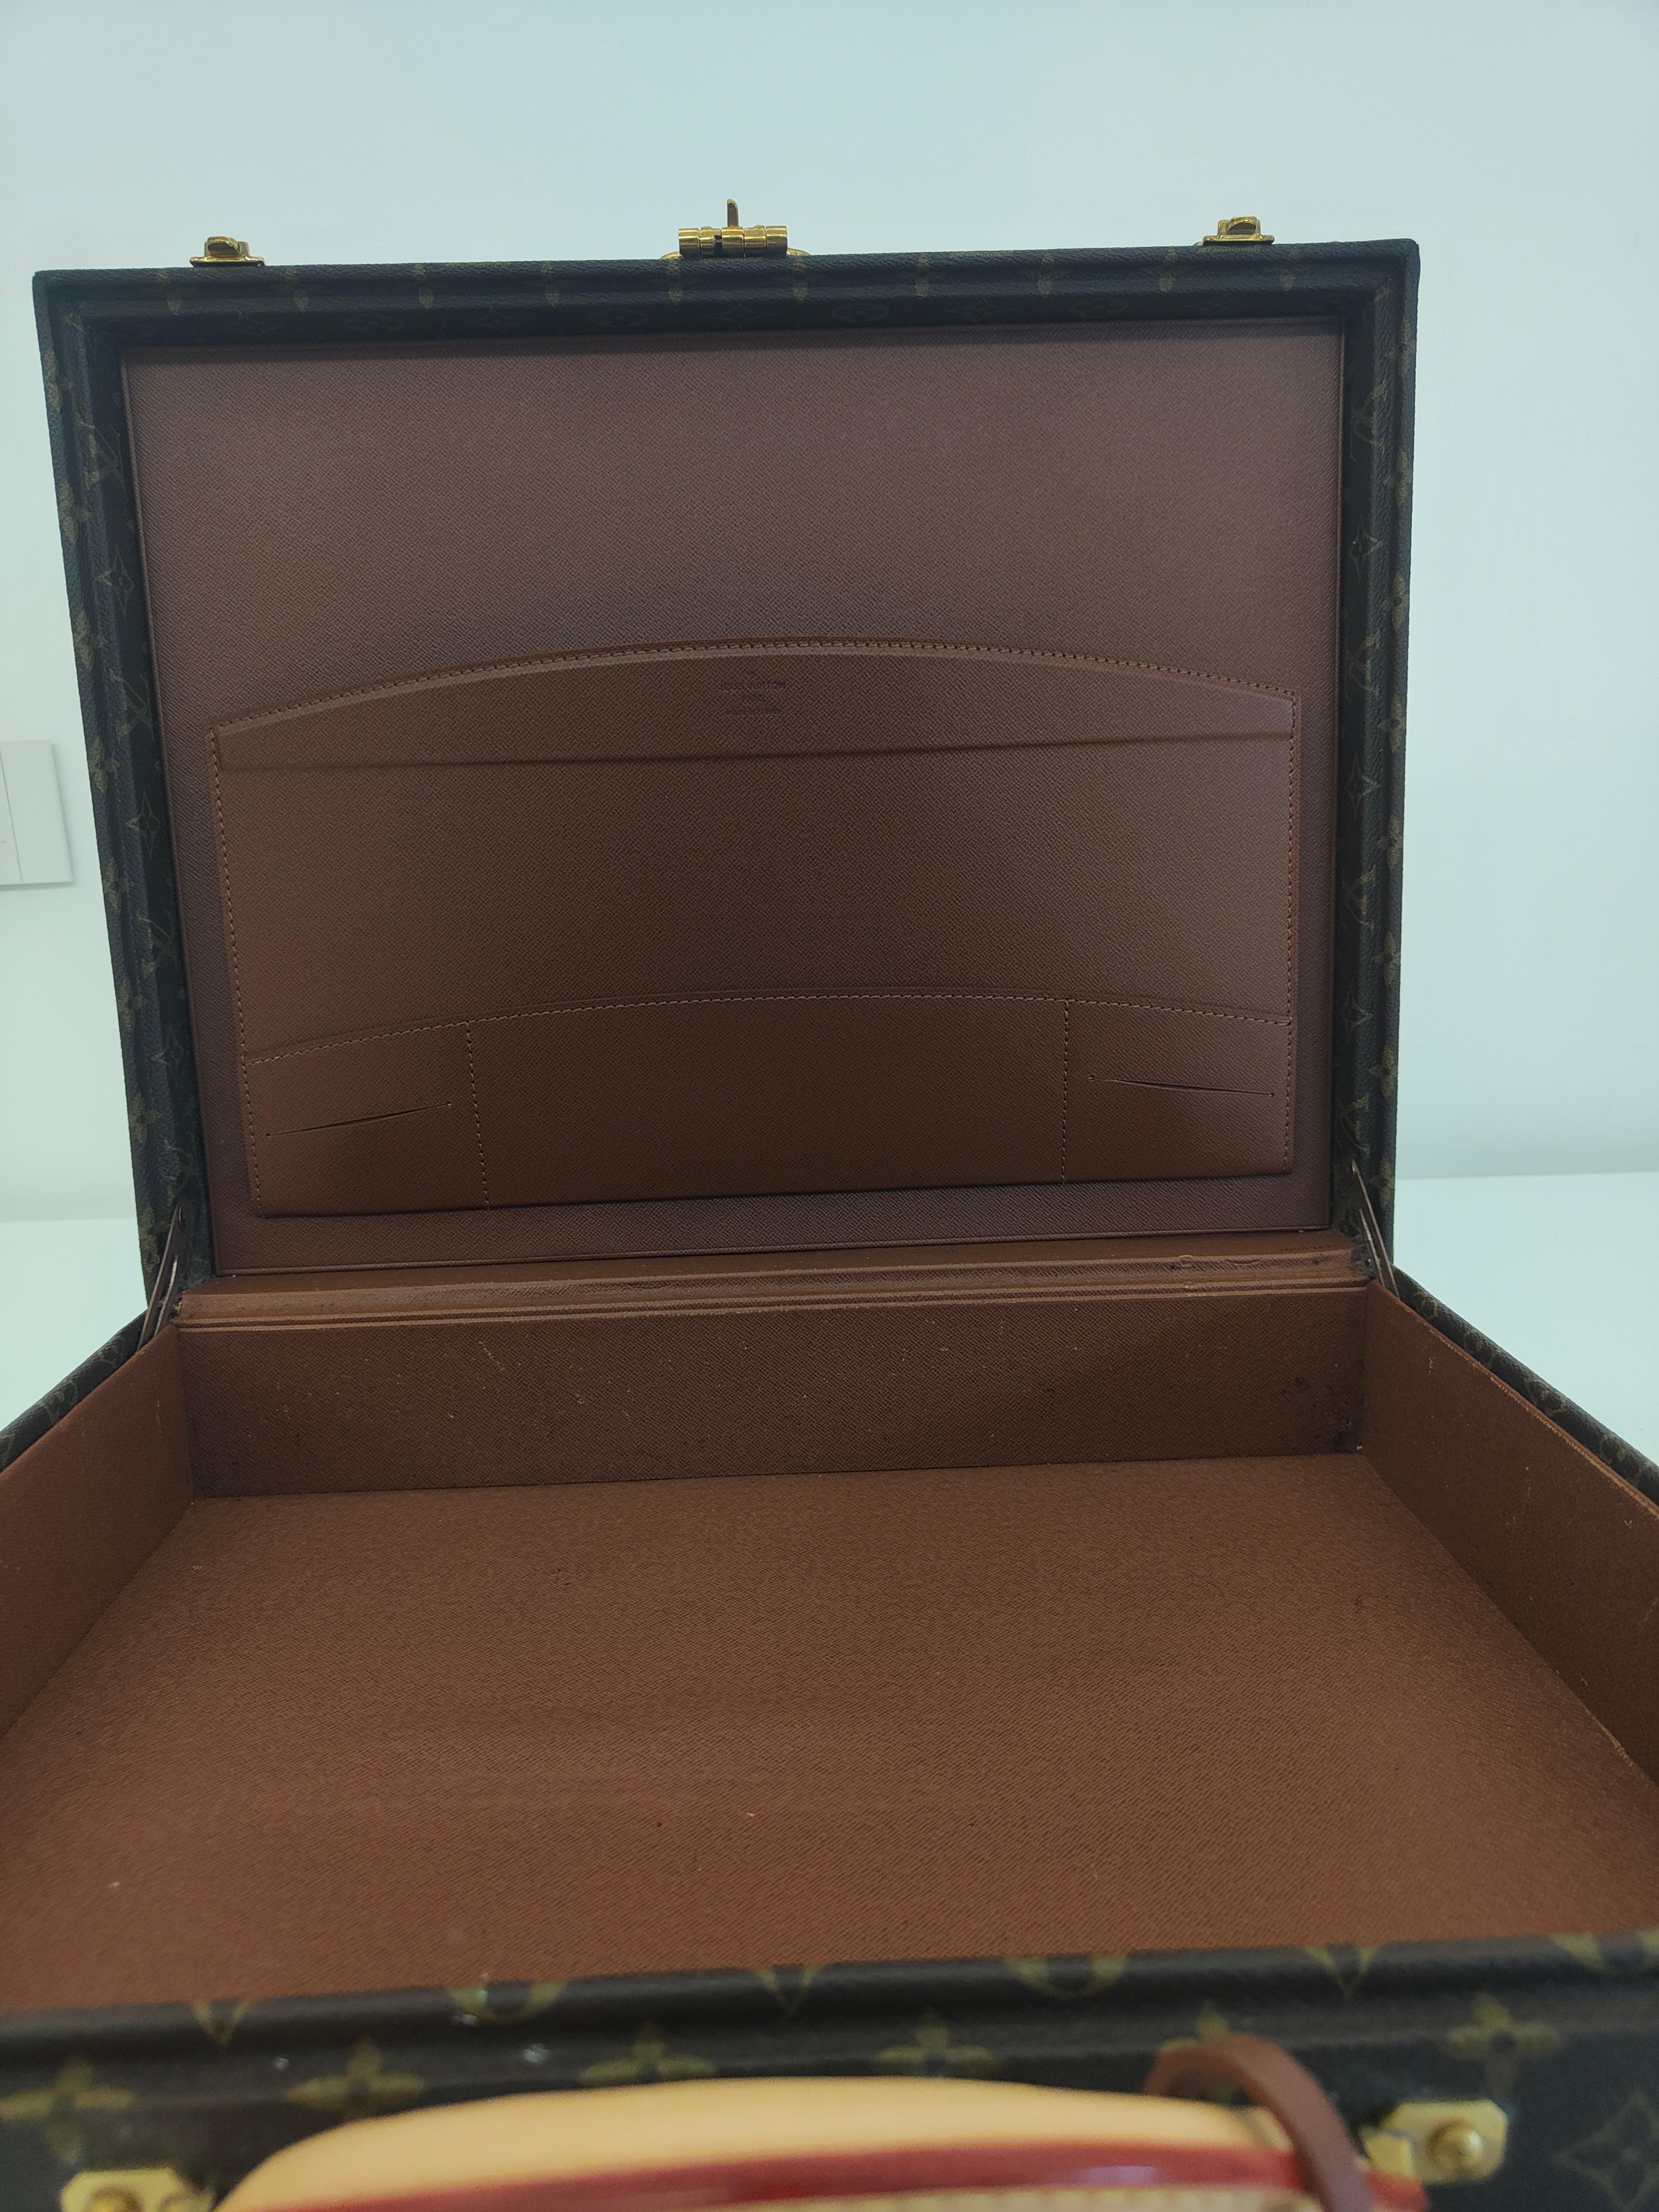 Louis Vuitton President Briefcase
measurements: 44*34*11